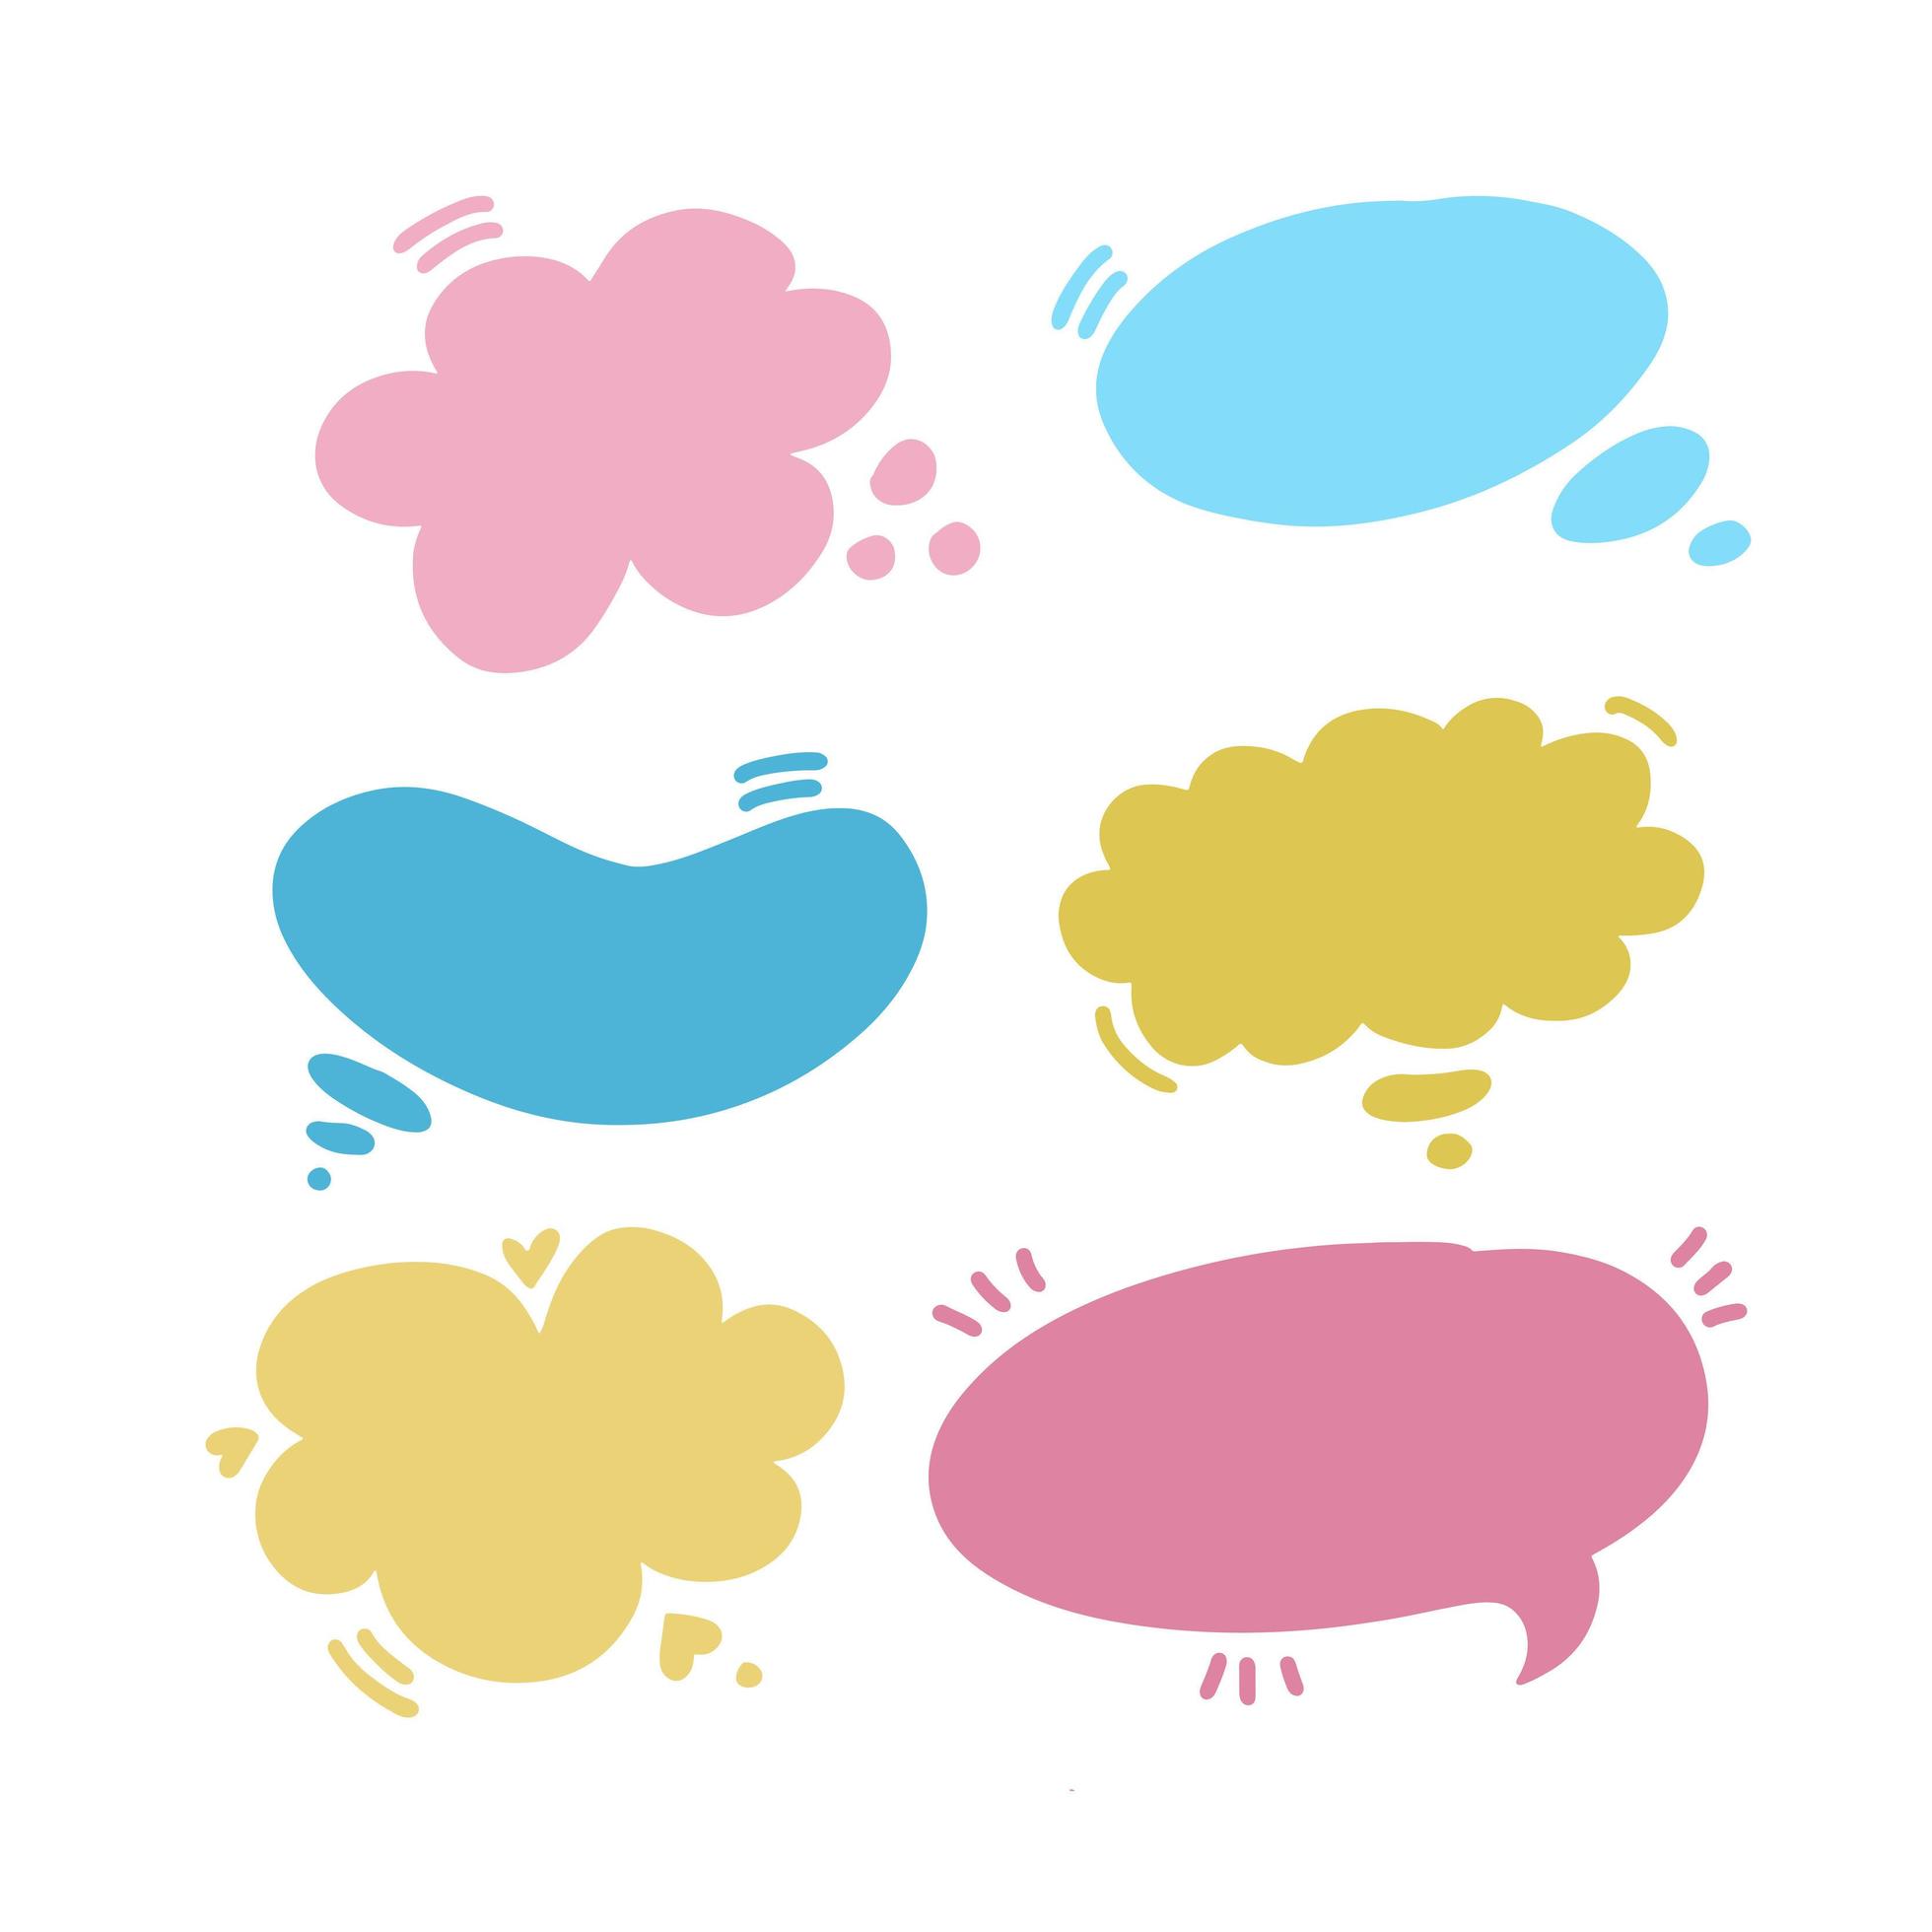 uppsättning pratbubblor i olika färger och former. ballongsats med klotter för inskriptioner, oval, moln, prickar. platt doodle stil samling för tecknad och komisk dialog, konversation, prata vektor